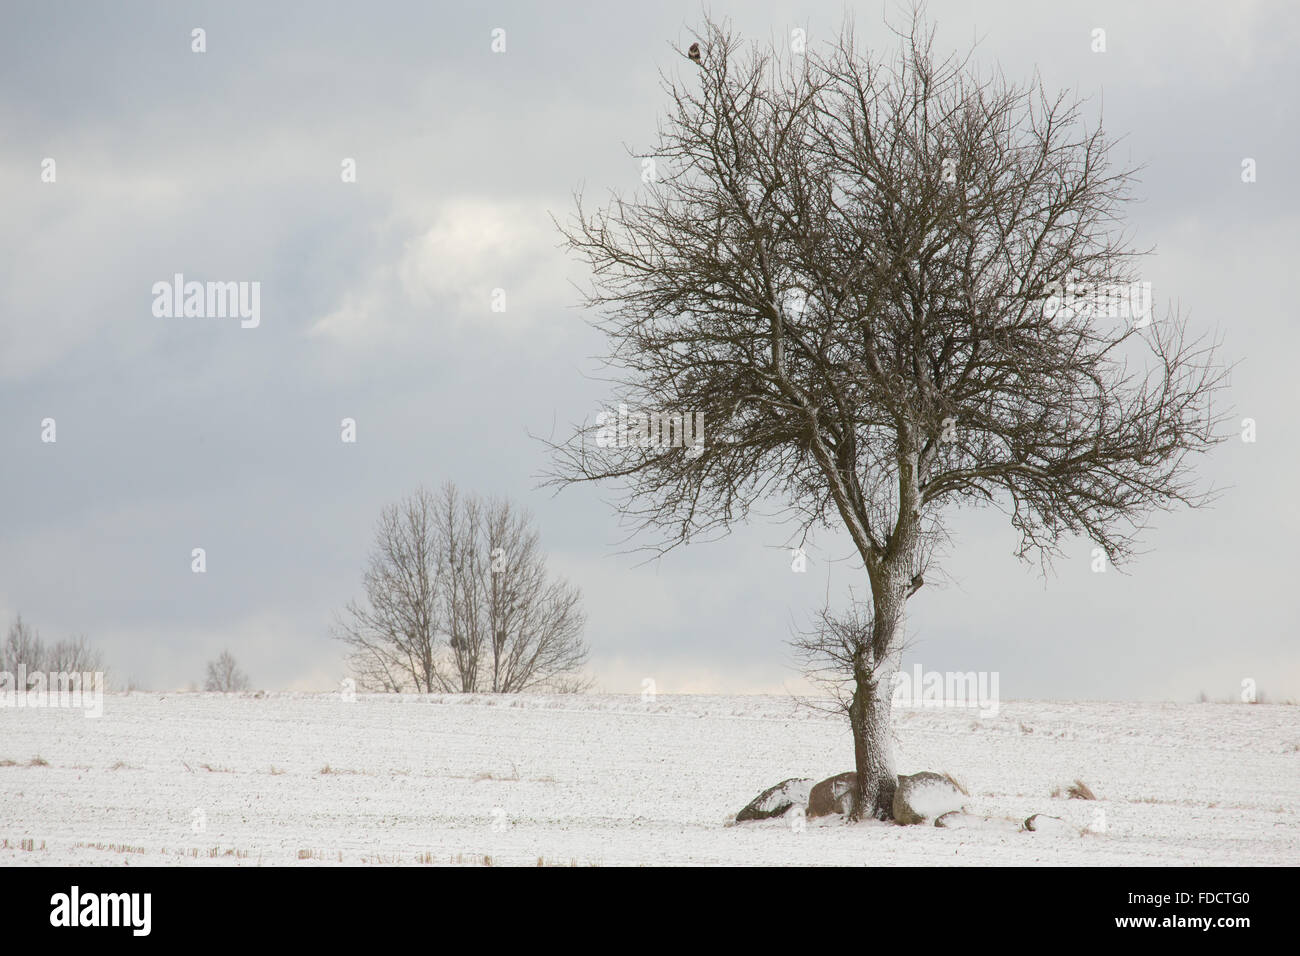 Einsamer Baum im Winter verschneiten Feld gegen bewölktem Himmel, Region Podlachien, Polen, Europa Stockfoto